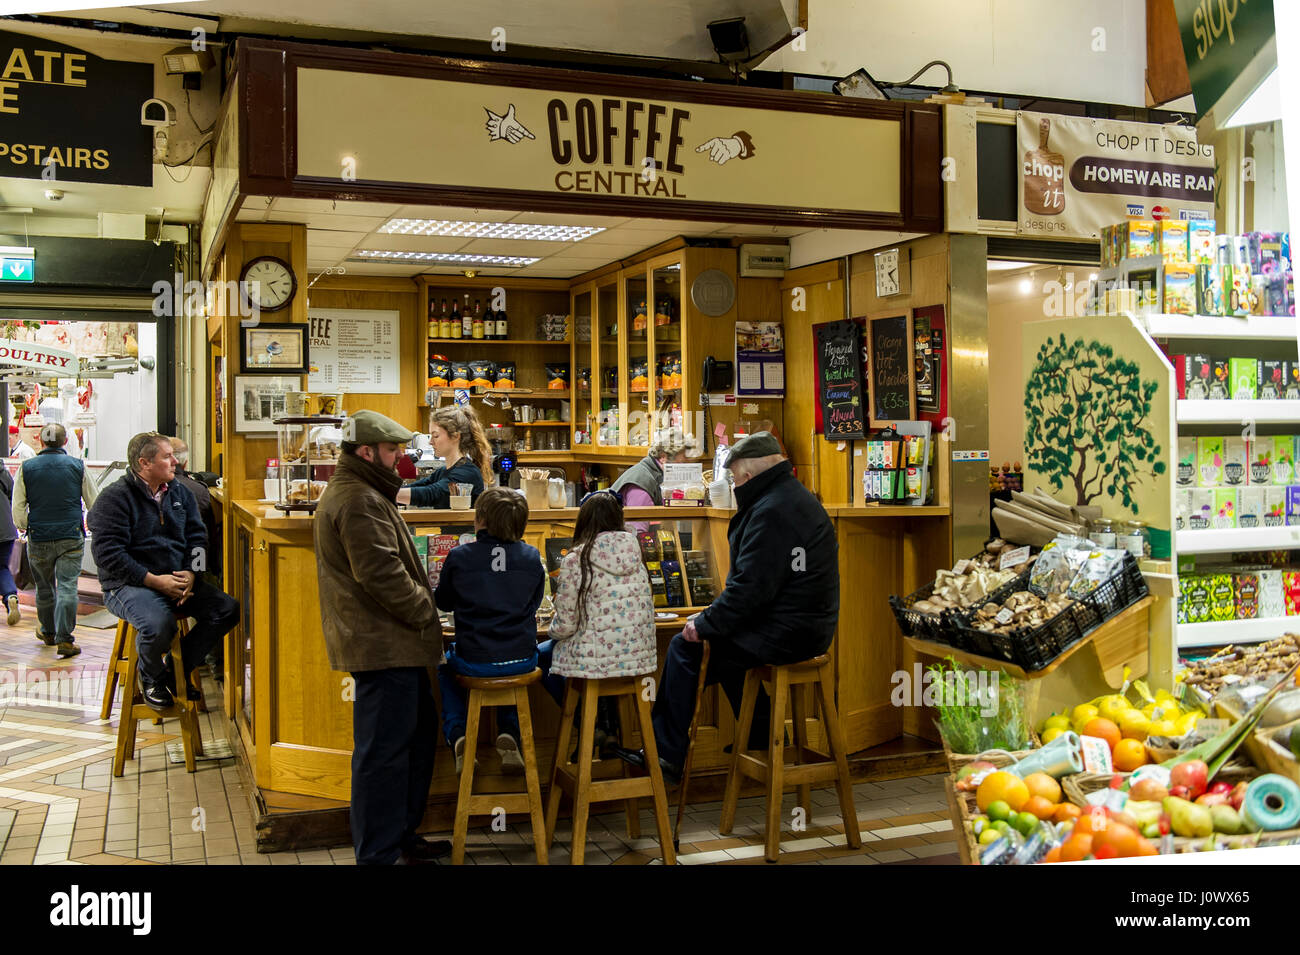 Le Central Café Café au marché anglais, Cork, Irlande. Banque D'Images